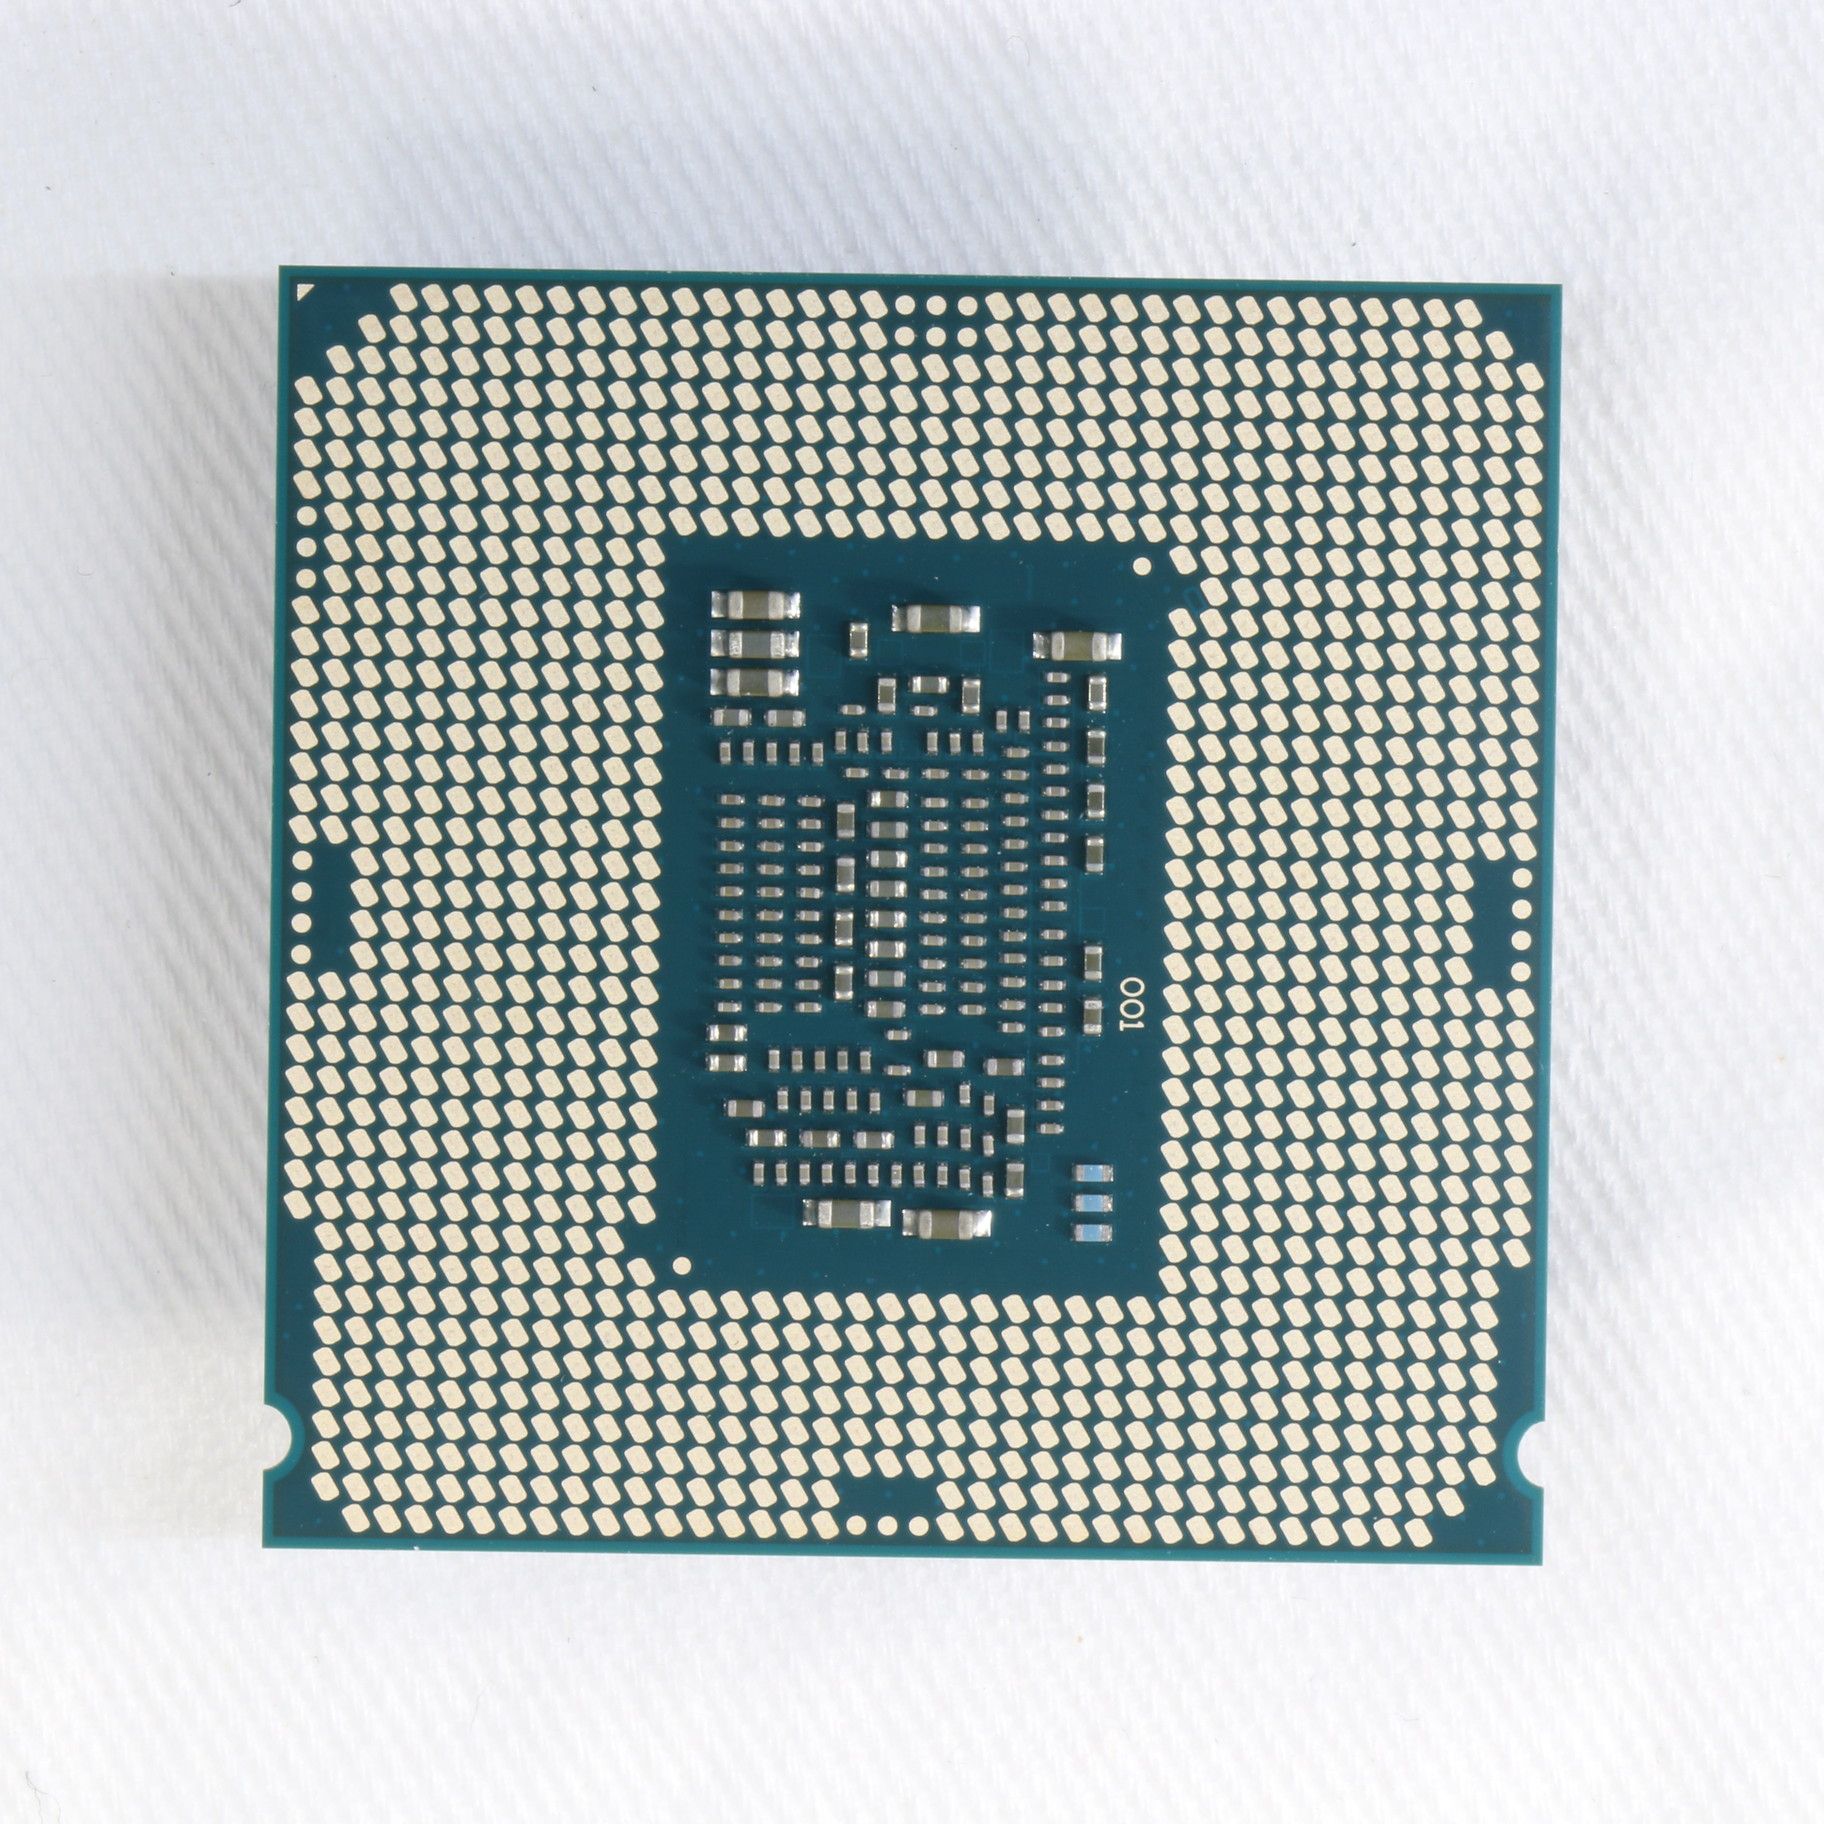 割引発見 Core Intel i7 ジャンク品 7700k PCパーツ - www.nationaltraining.edu.au